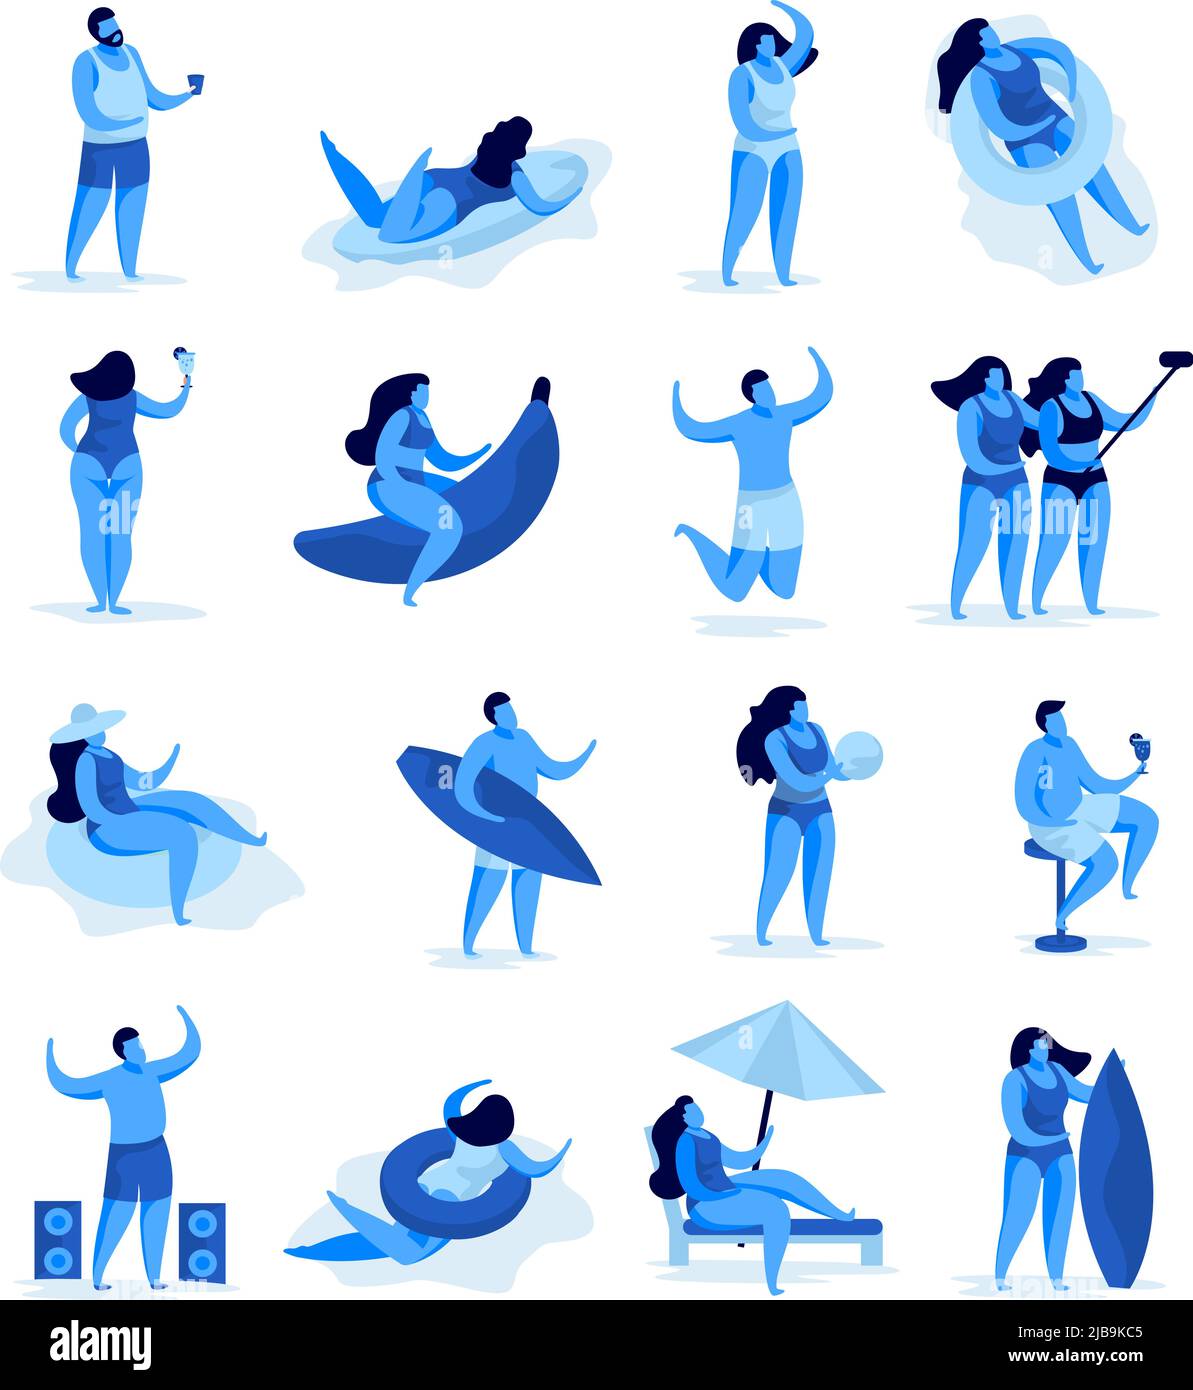 Ensemble d'images de concept de fête d'été isolées avec des personnages humains et des activités de plage sur une illustration vectorielle d'arrière-plan vierge Illustration de Vecteur